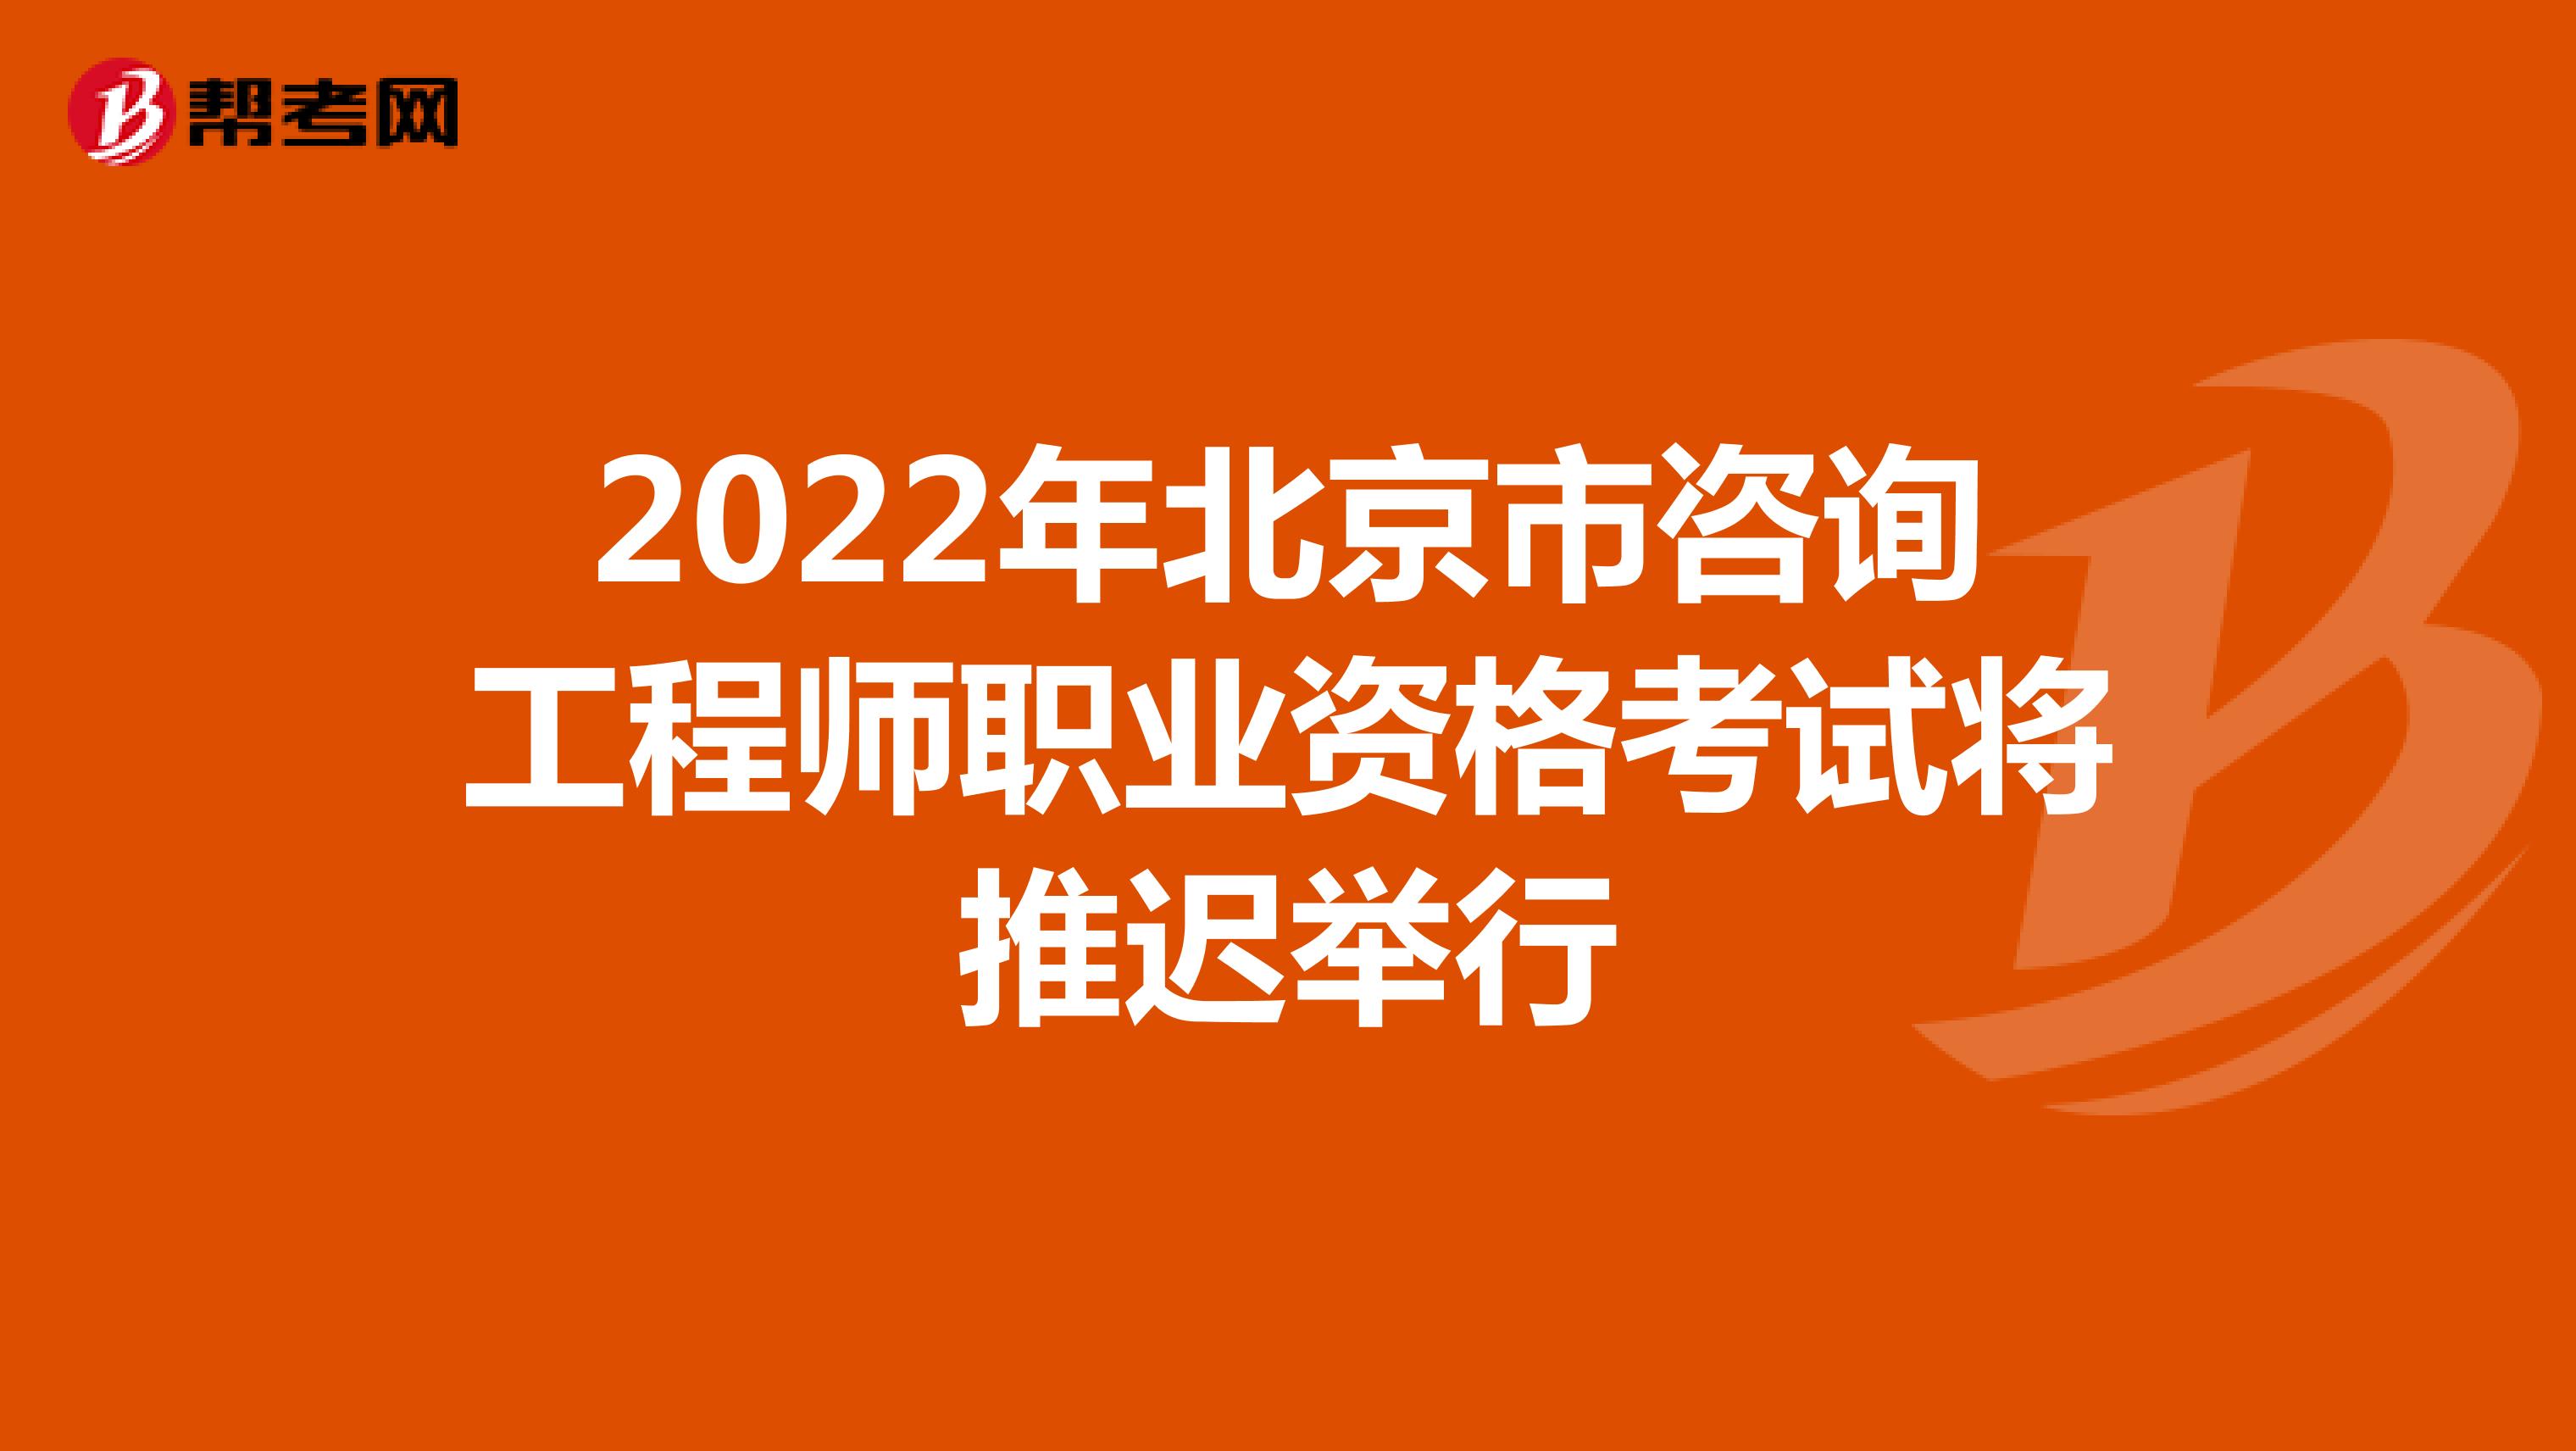 2022年北京市咨询工程师职业资格考试将推迟举行